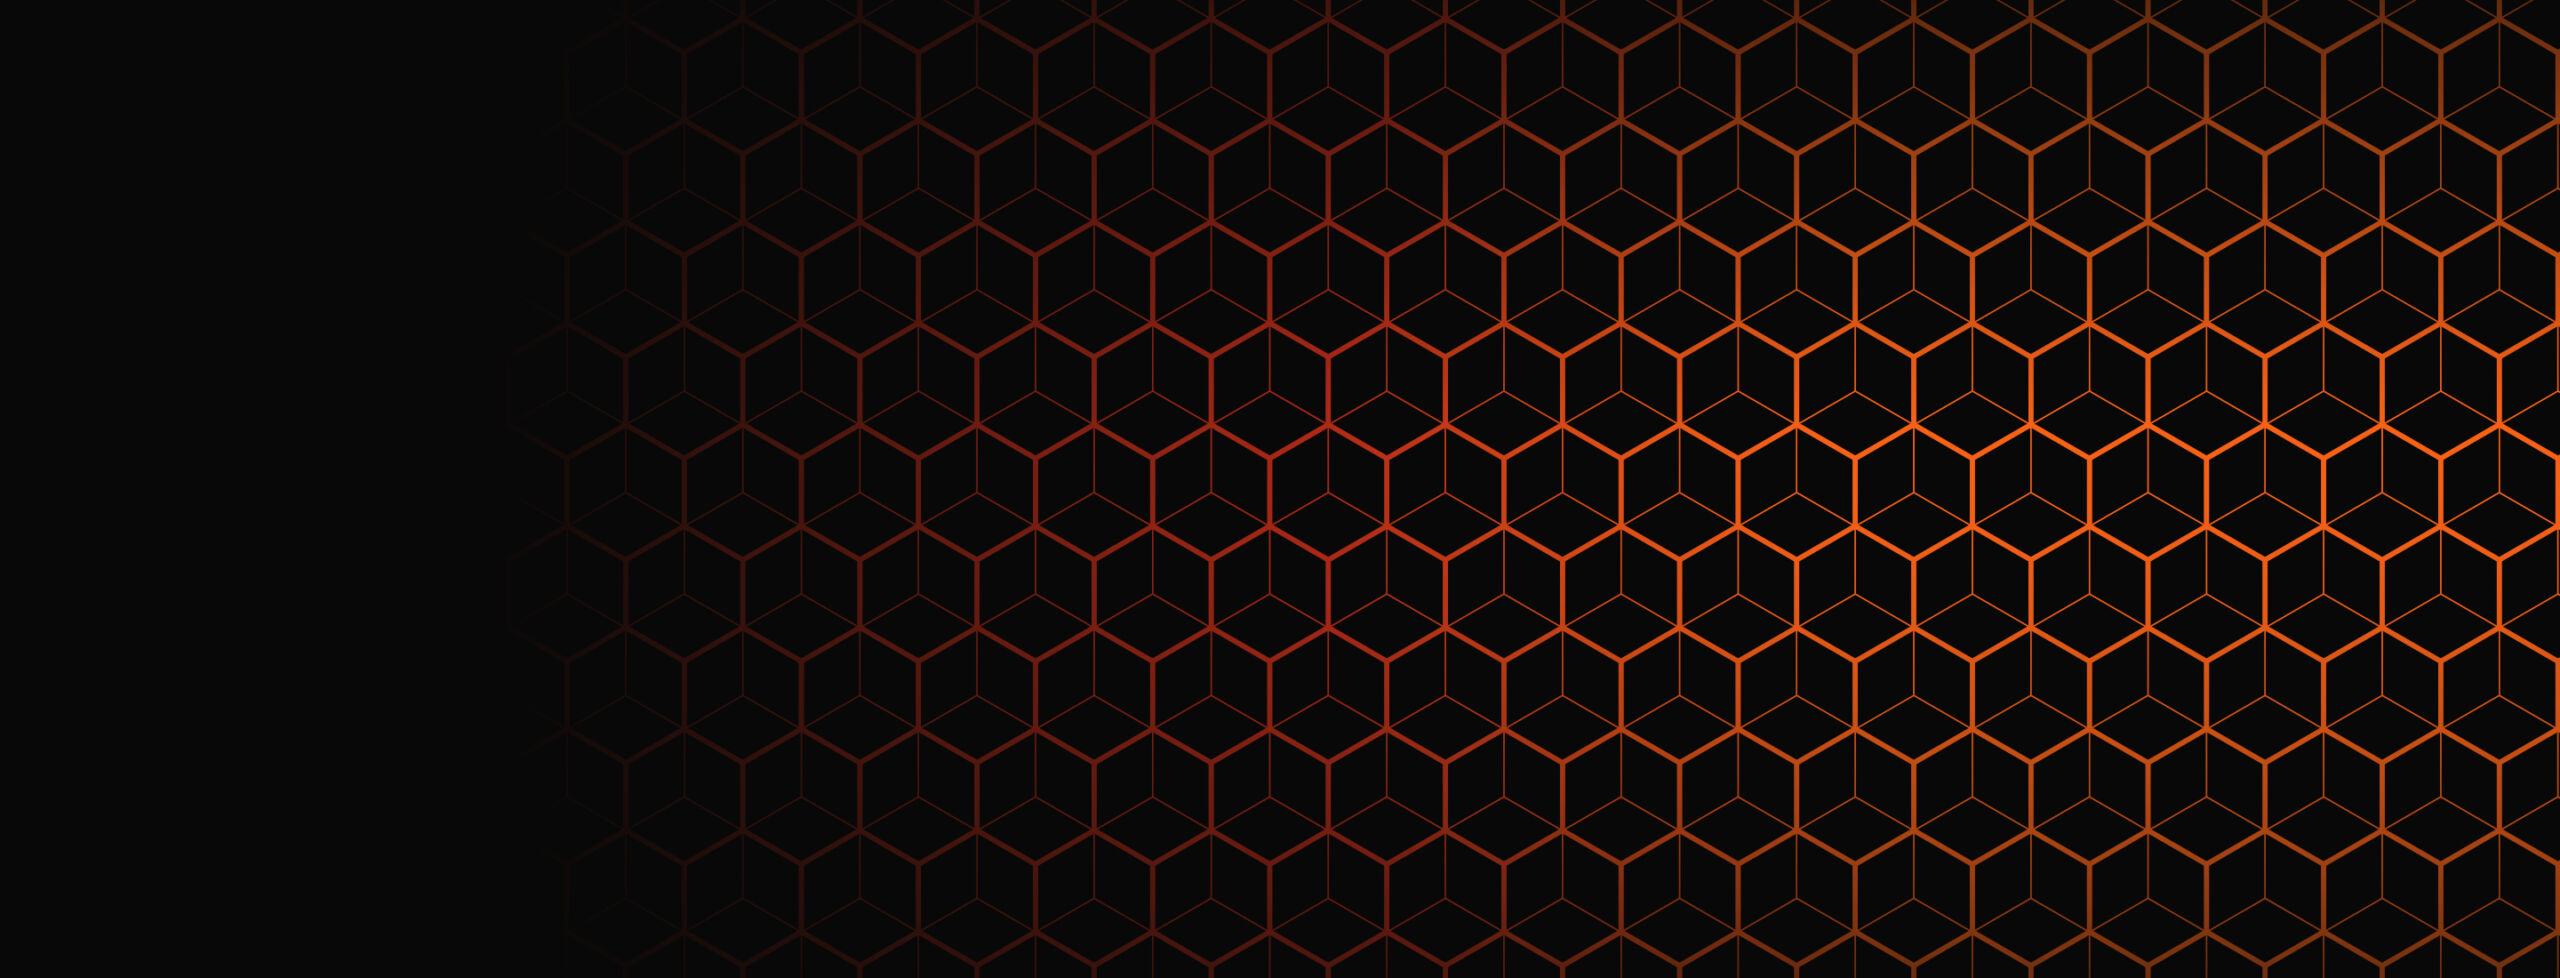 Orange prism shapes on black background to depict document due diligence technology